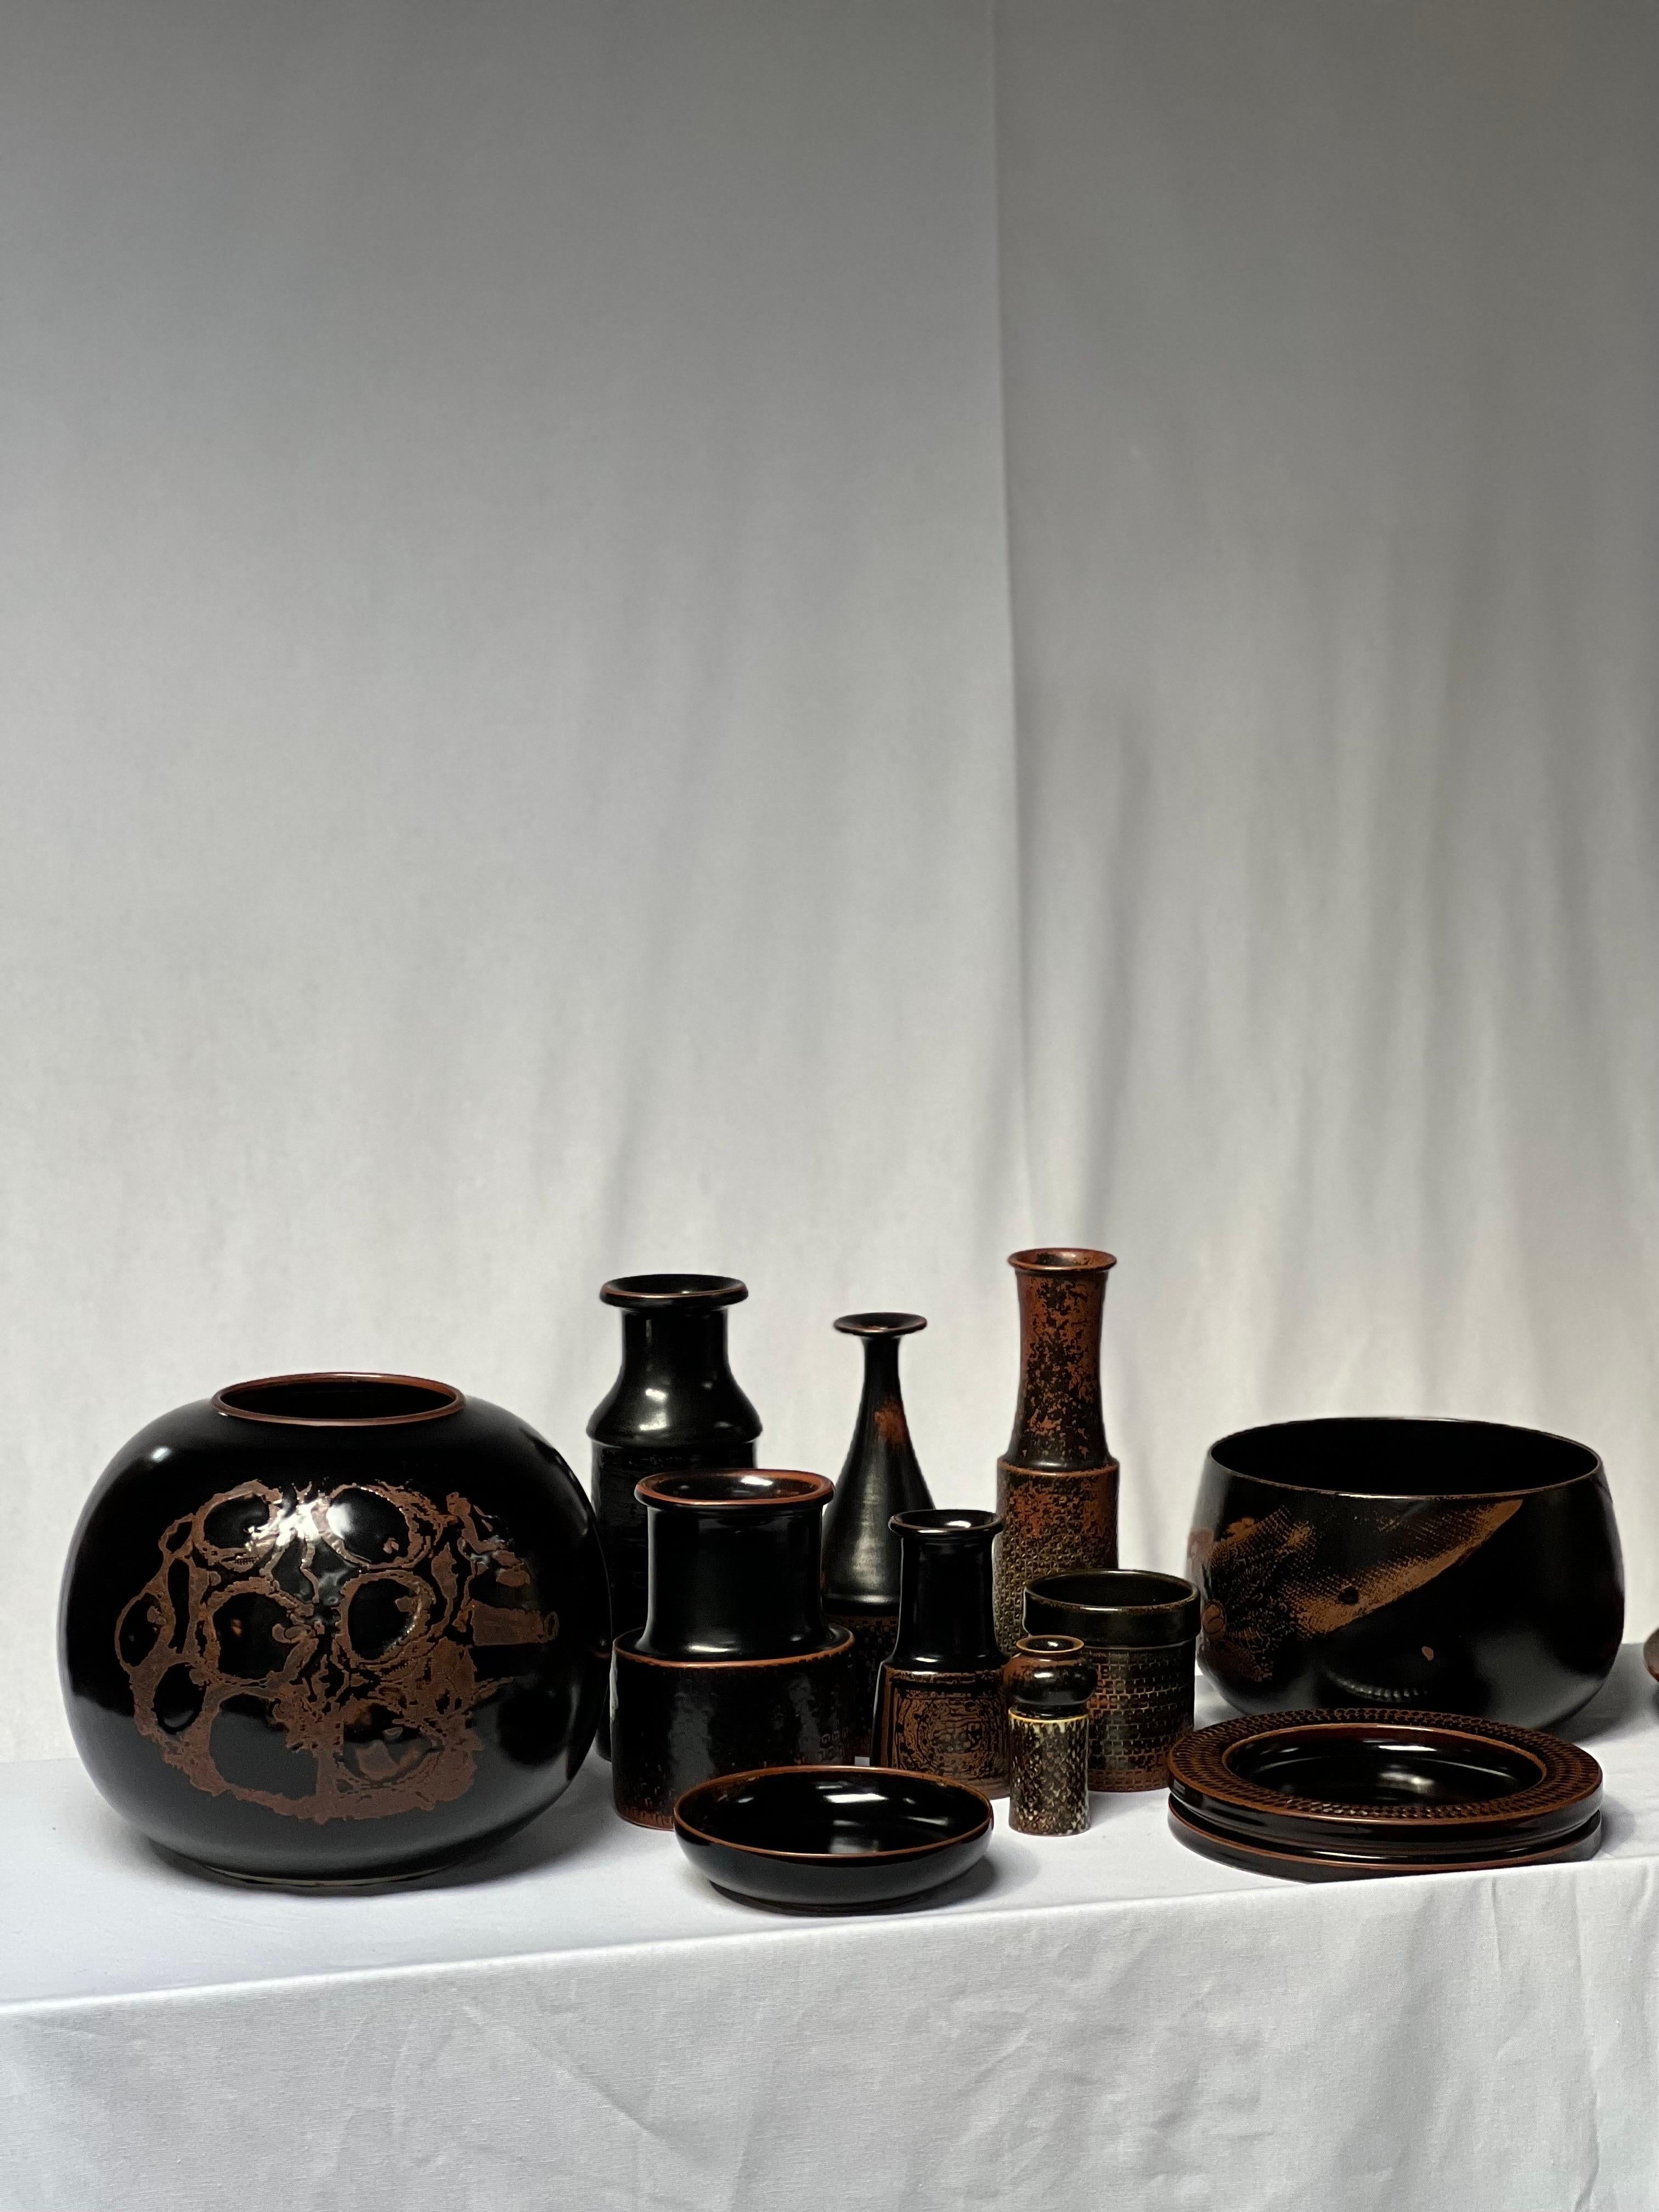 Stig Lindberg Unique Vase in black Glaze Tenmoku Made by Hand Sweden 1964 For Sale 5